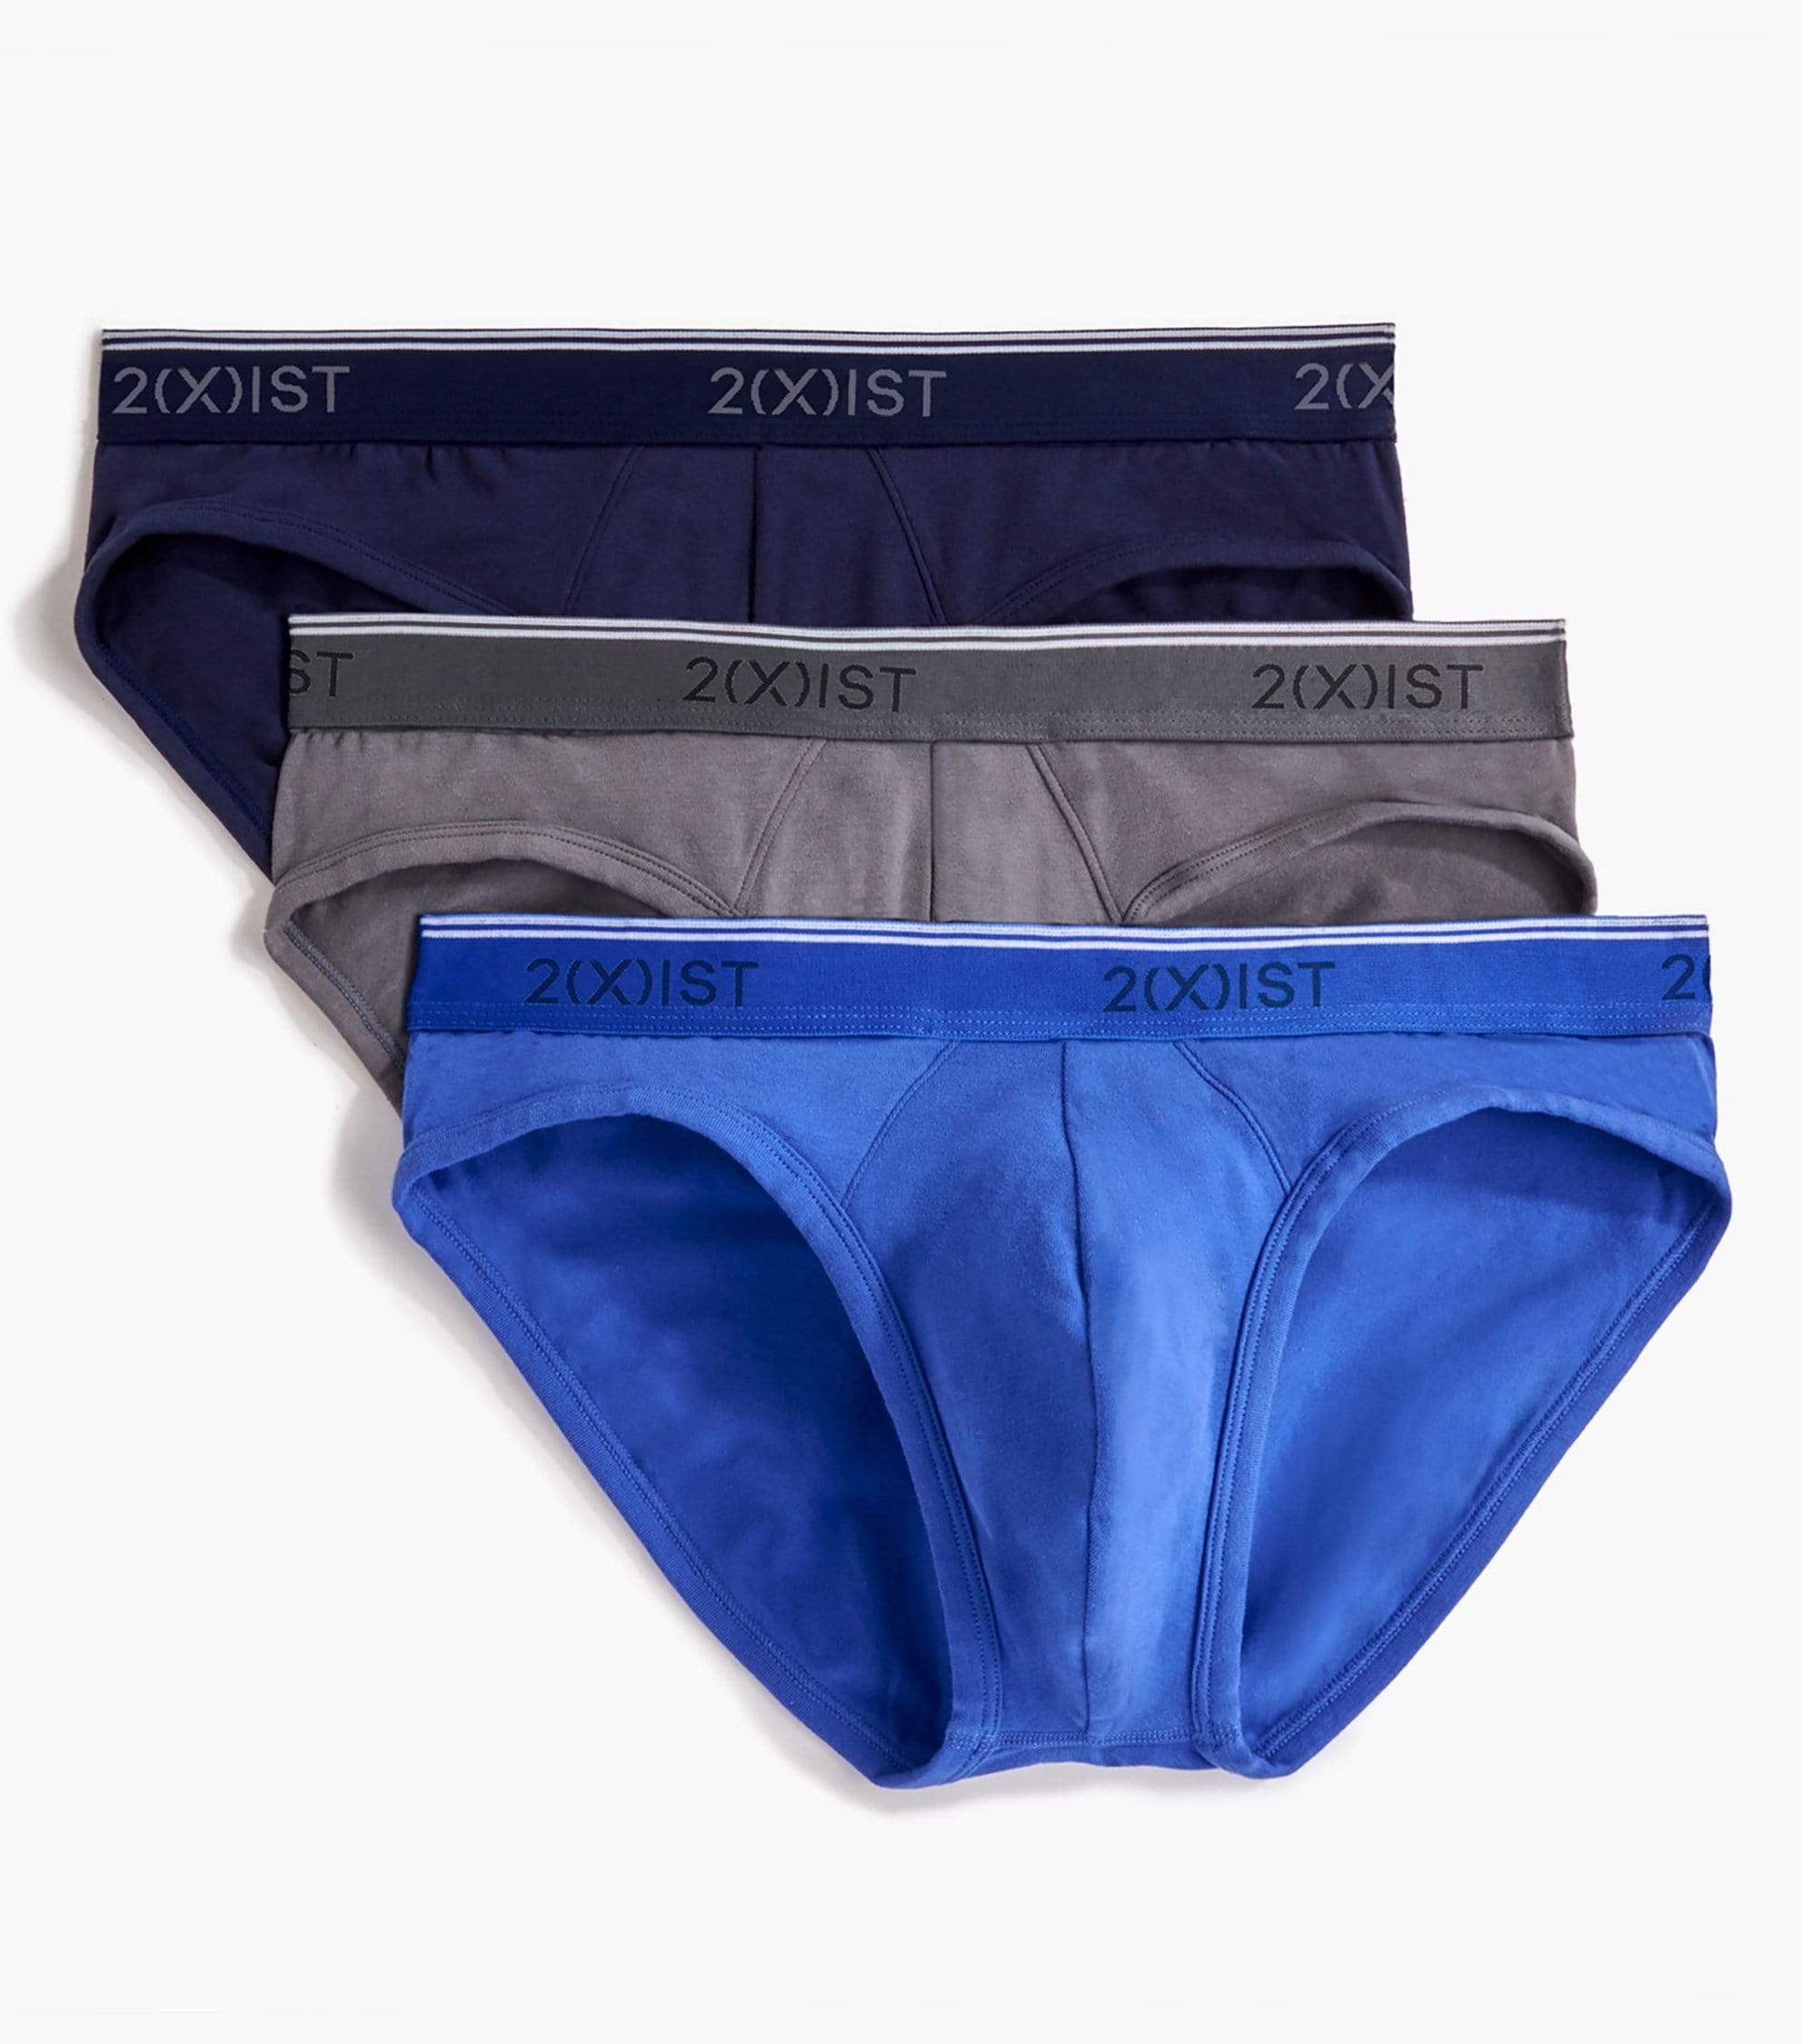  2 Under Men's Underwear 3 Pack